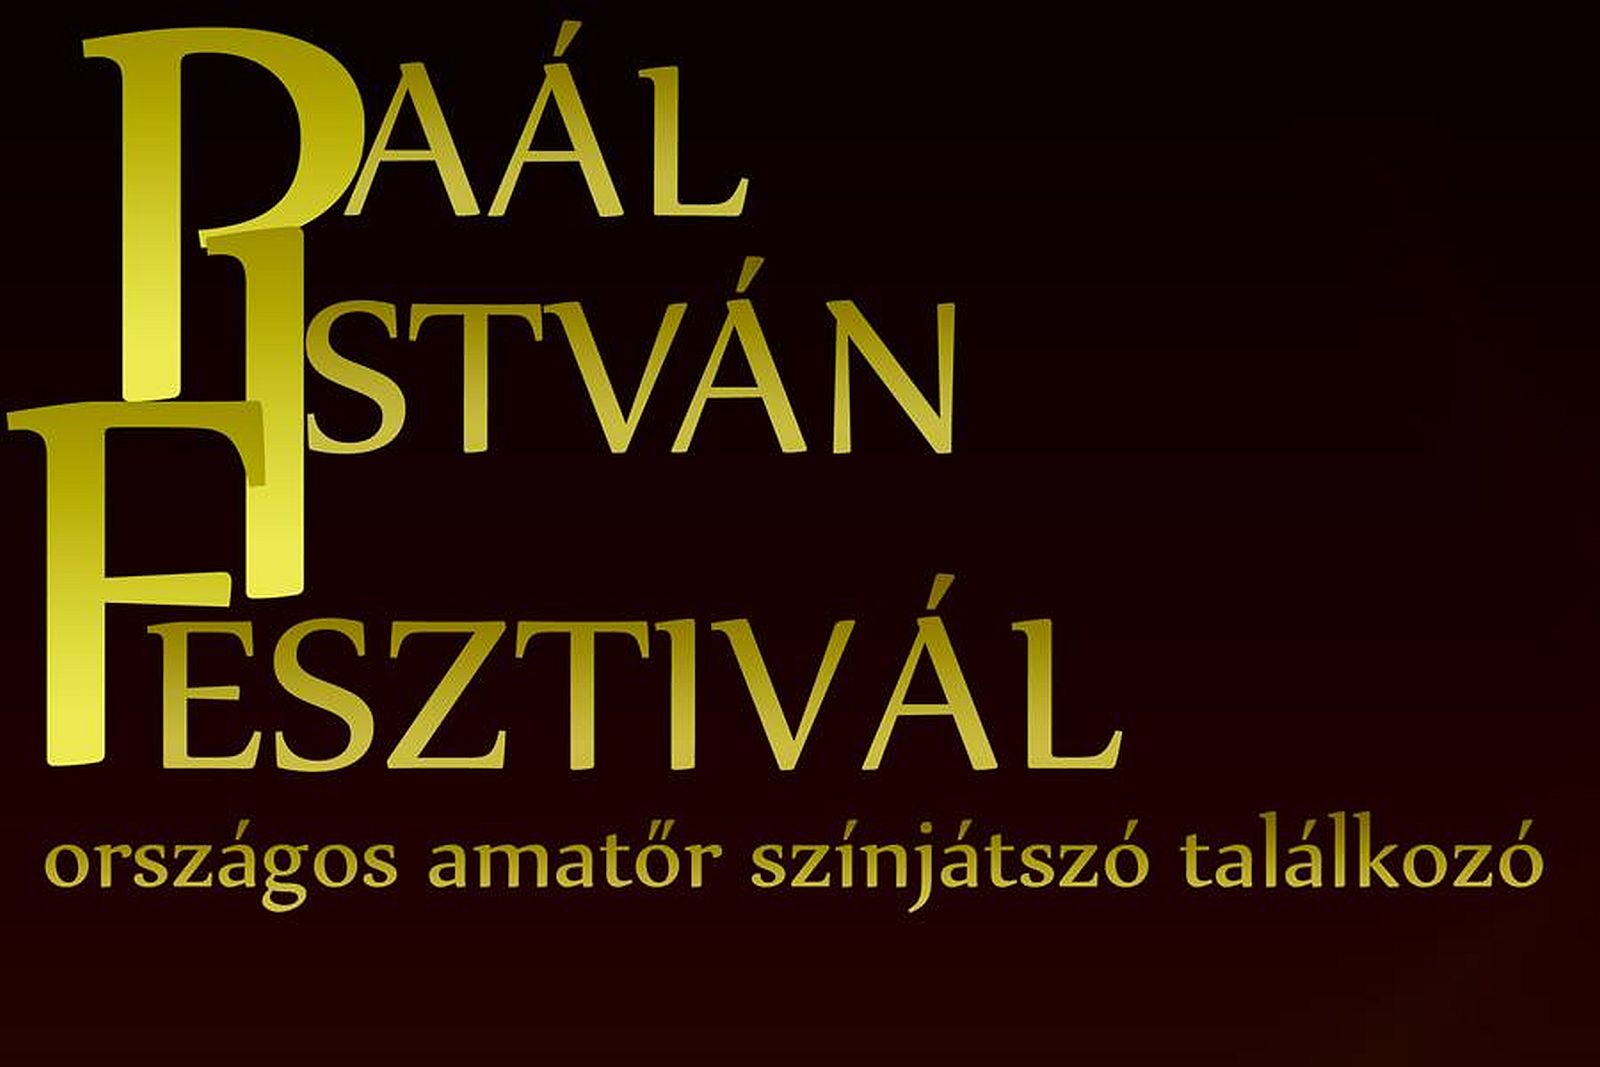 Paál István Fesztivál kilencedszer - szeptember 30-ig jelentkezhetnek az amatőr színjátszók